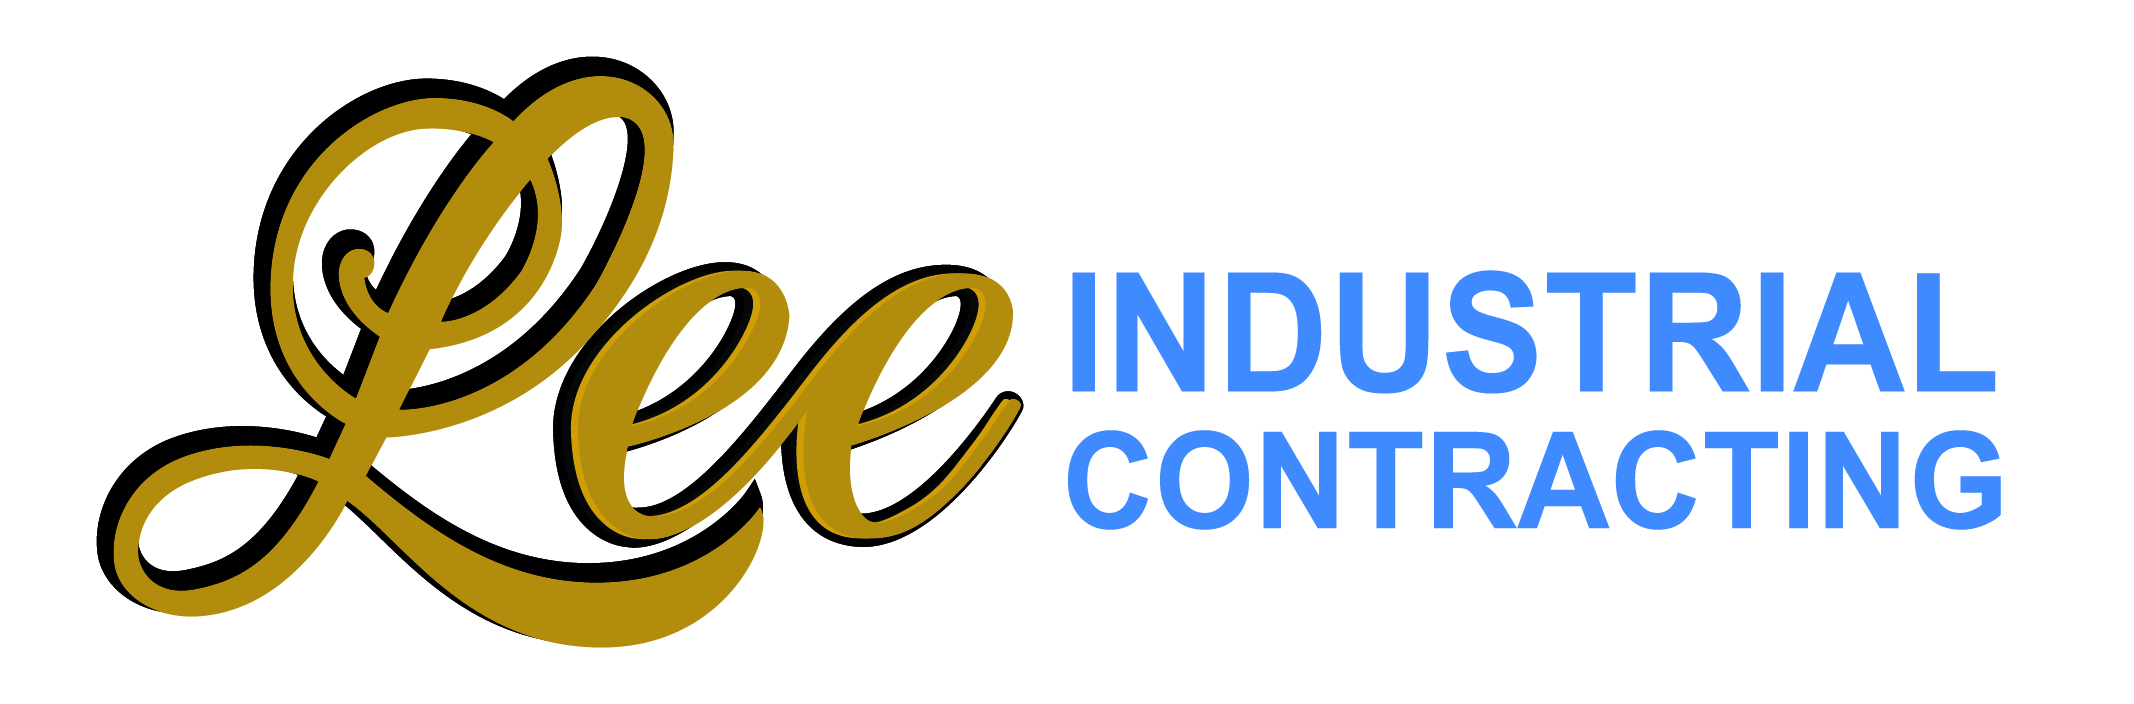 Lee Industrial Contracting